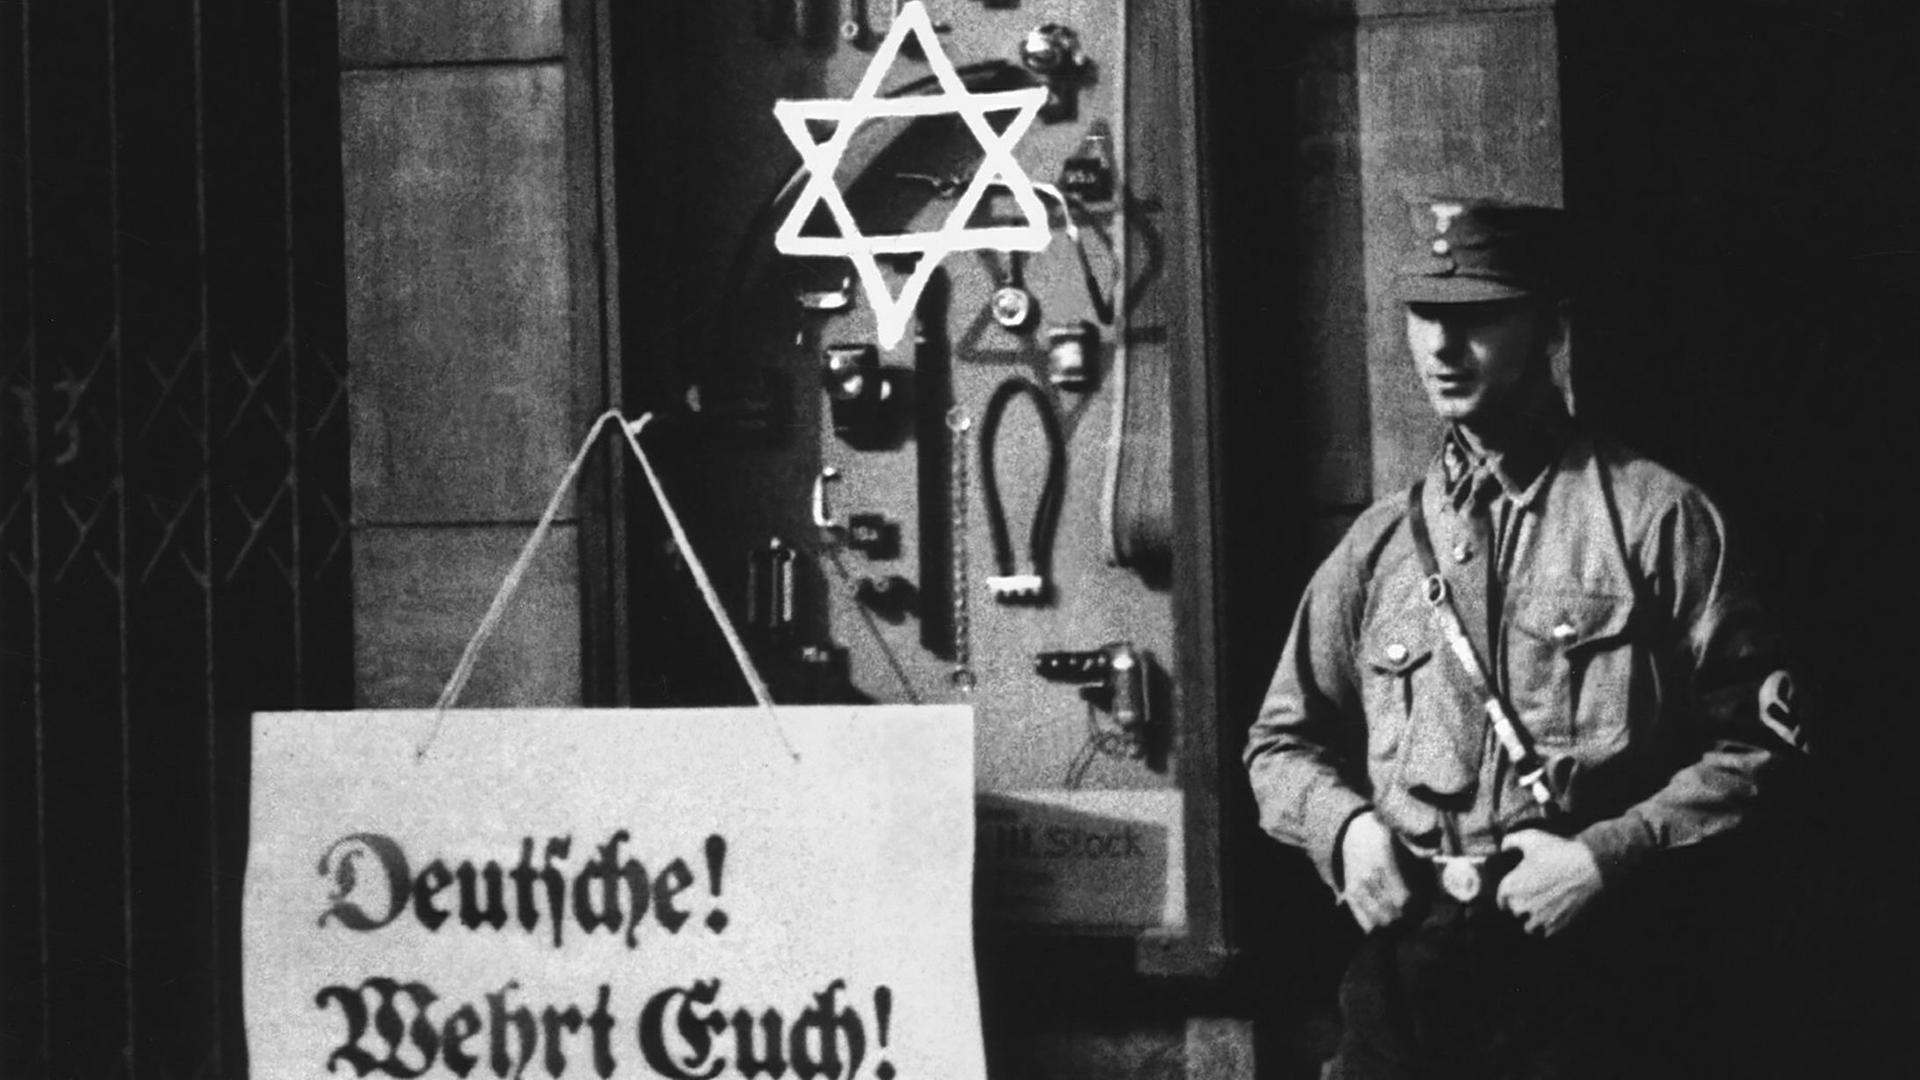 An einem Schaufenster steht auf einem Plakat: "Deutsche! Wehrt Euch! Kauft nicht bei Juden!", ein Aufruf zum Boykott jüdischer Geschäfte durch die Nationalsozialisten. Ein Judenstern ist auf das Schaufenster geschmiert, ein "Braunhemd" der SA (Sturmabteilung) steht als Wachposten daneben, Berlin, 1. April 1933